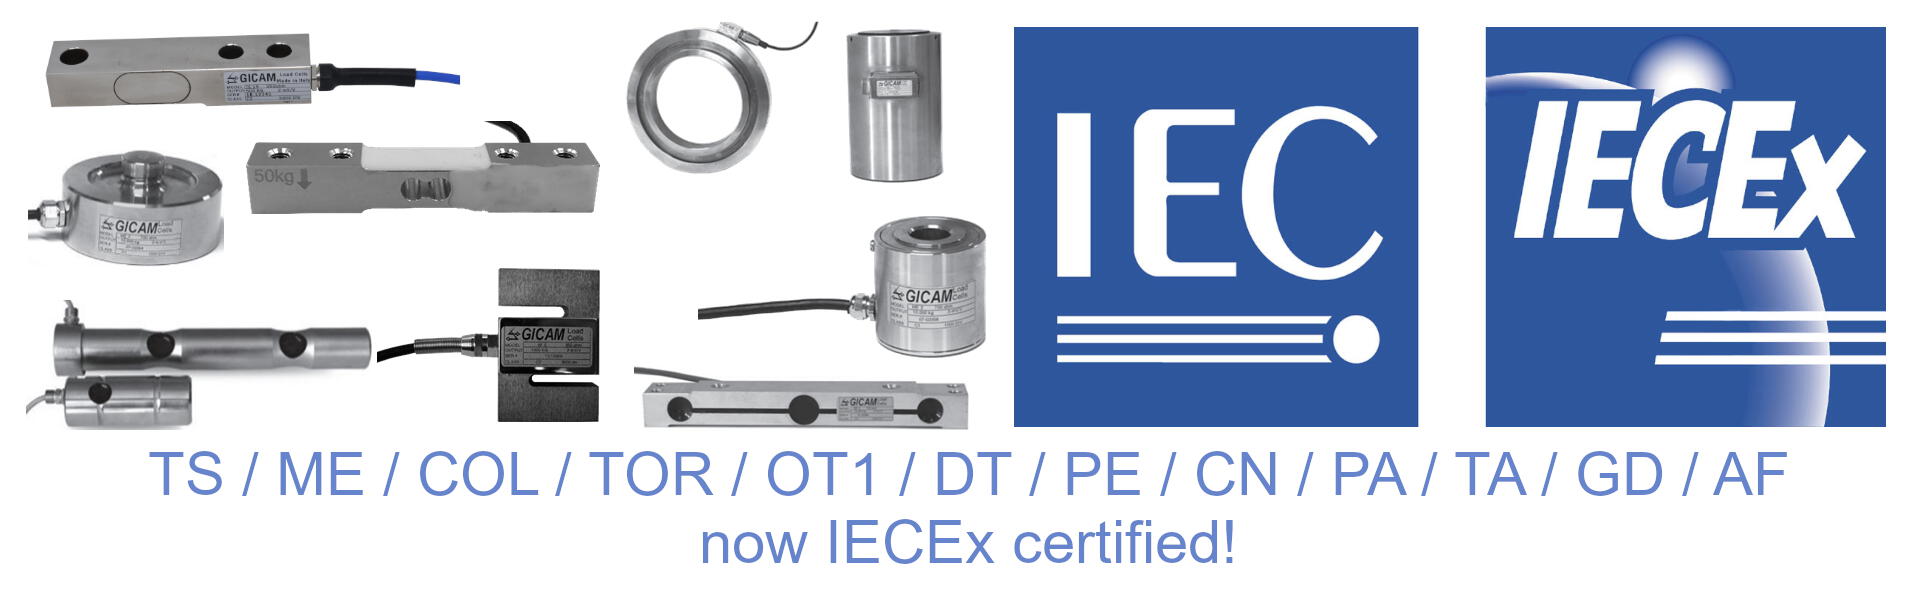 Nuova certificazione IECEx per Gicam